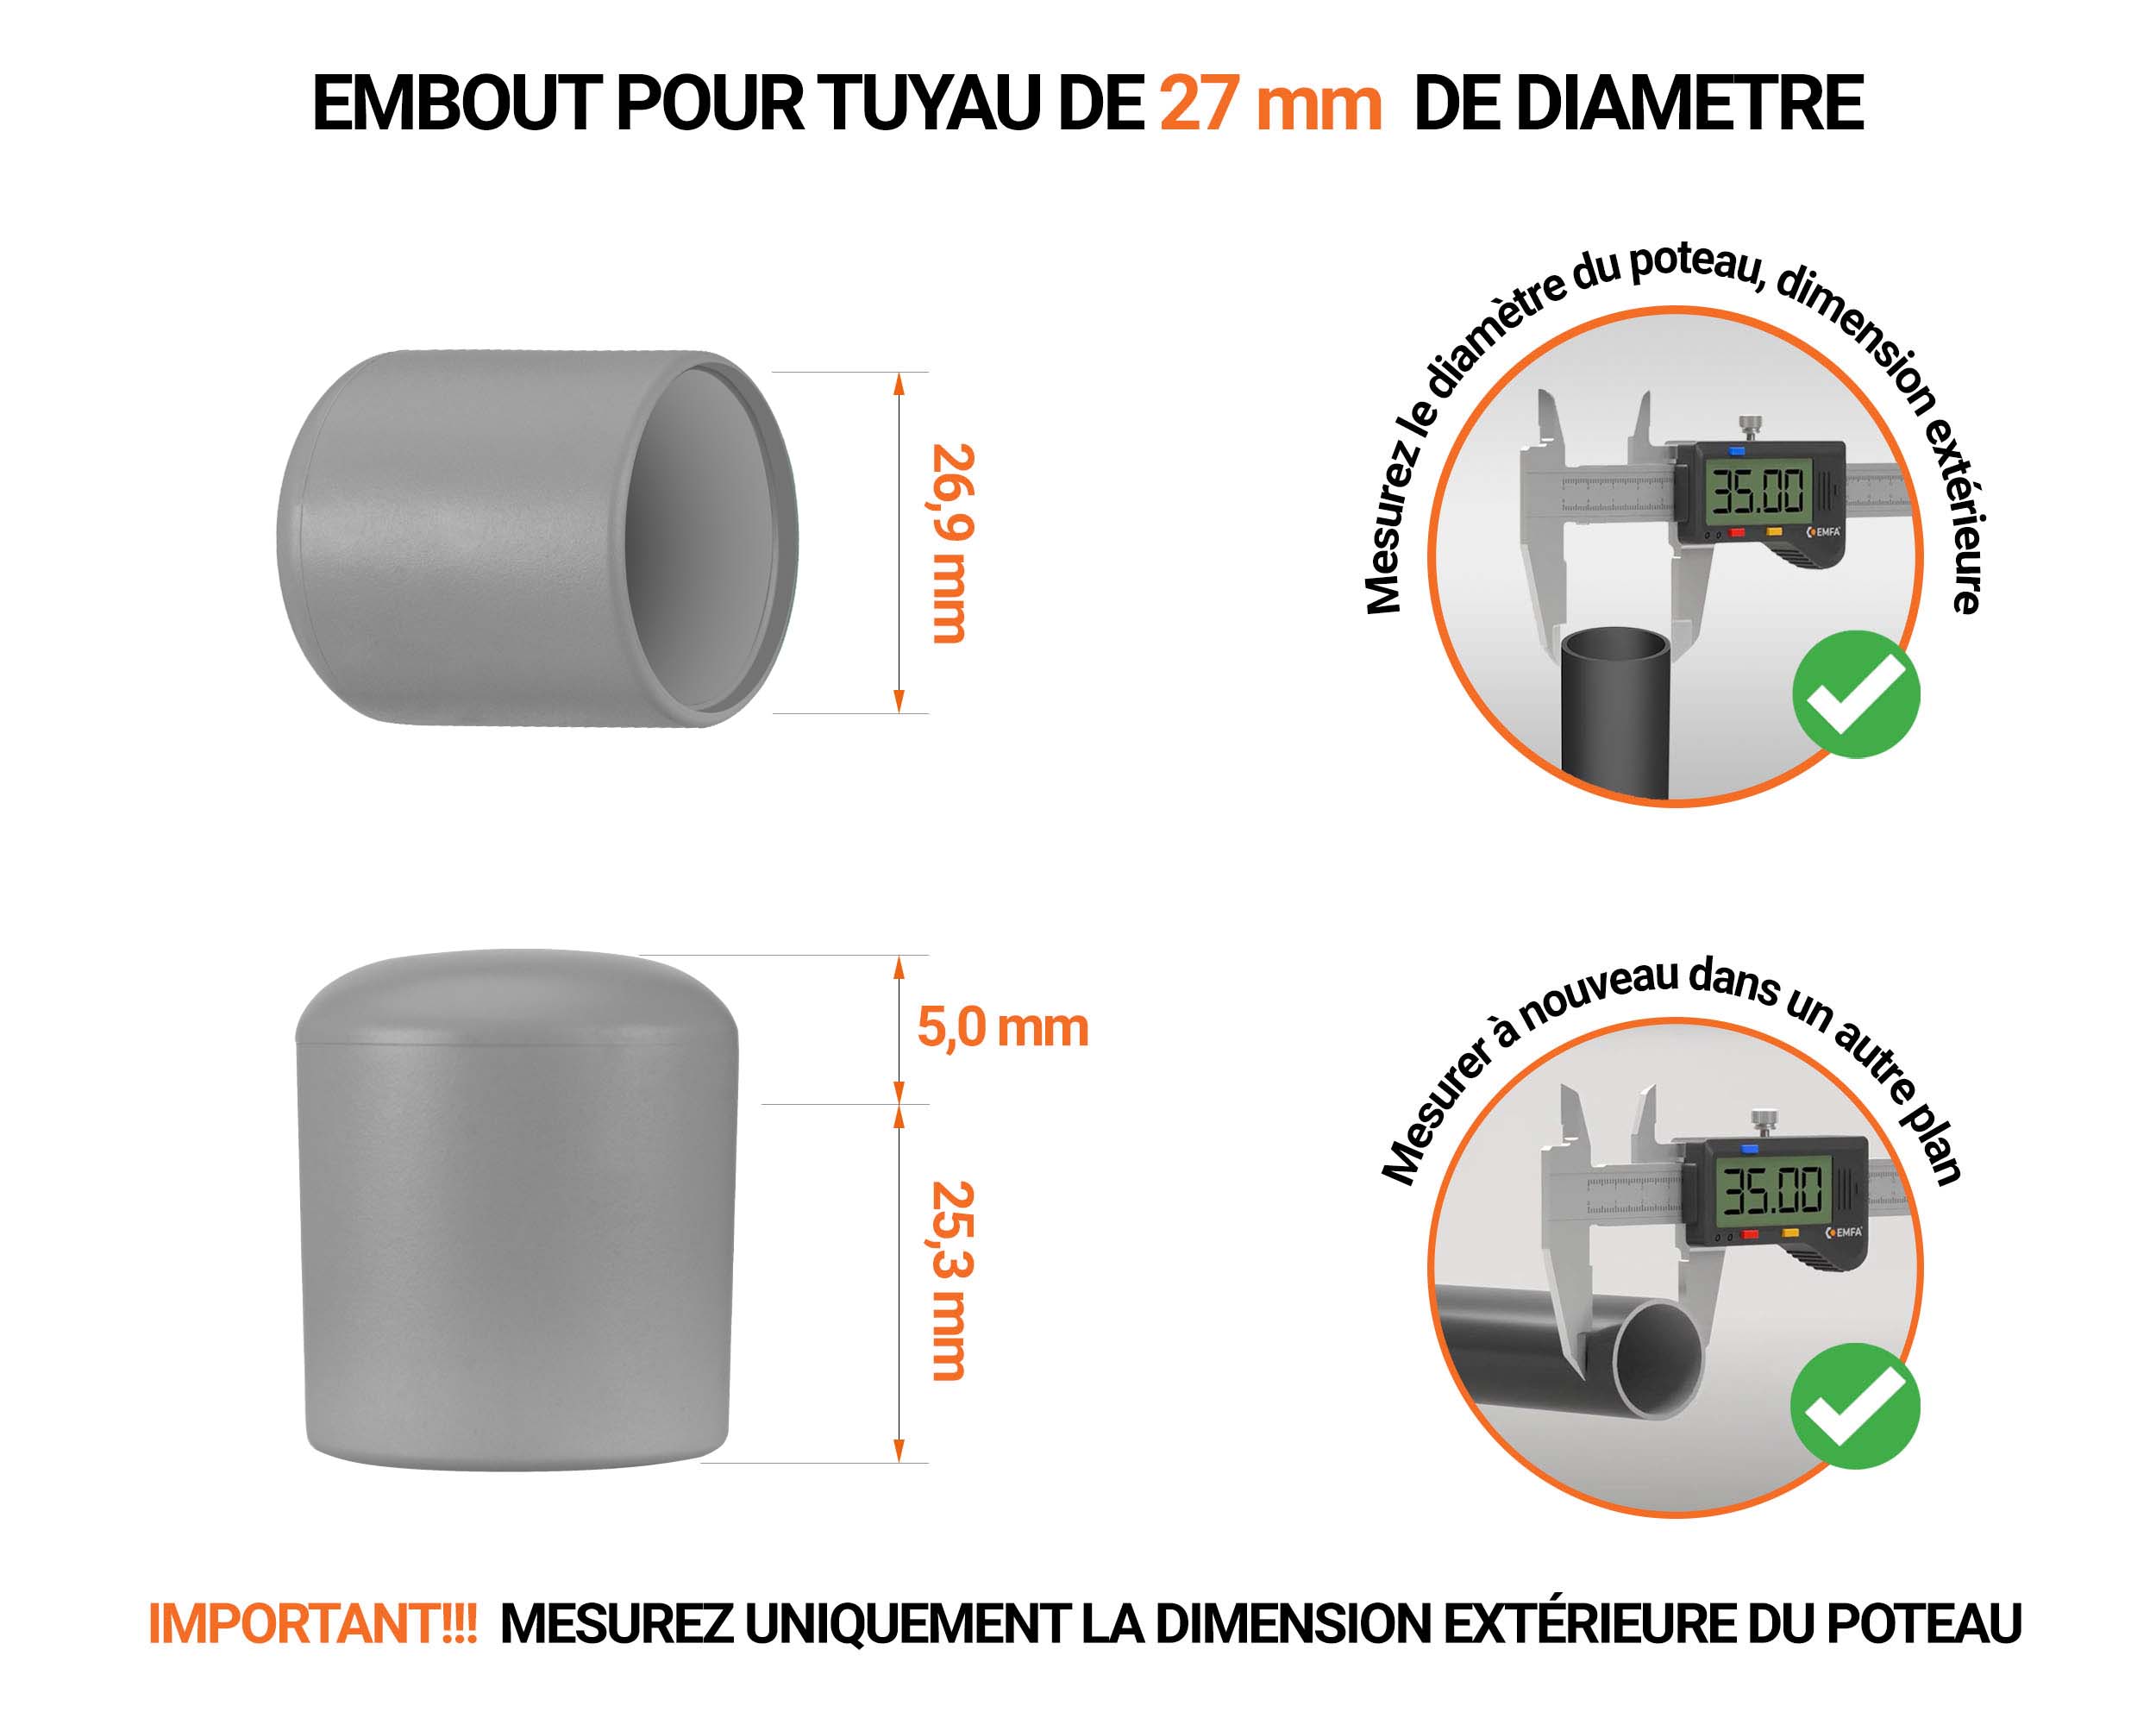 Embout noir de diamètre extérieur 27 mm pour tube rond avec dimensions et guide de mesure correcte du bouchon plastique.